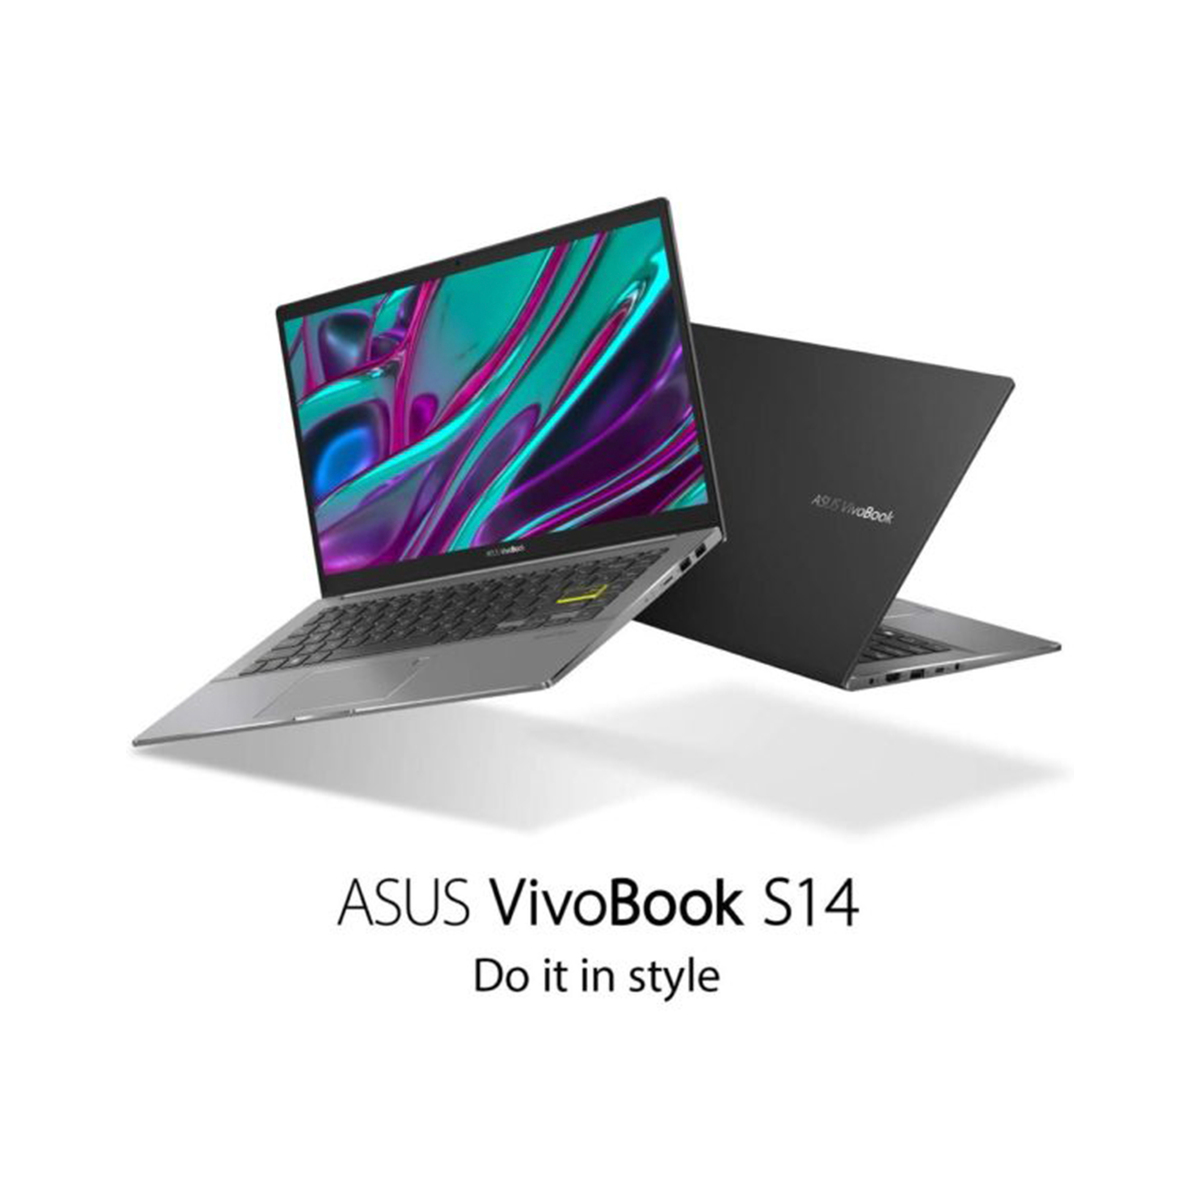 Asus VivoBook M433IA-EB531,R5-4500U,8GB RAM,1TB SSD,Shared Graphics,14"FHD,Windows 10,Black